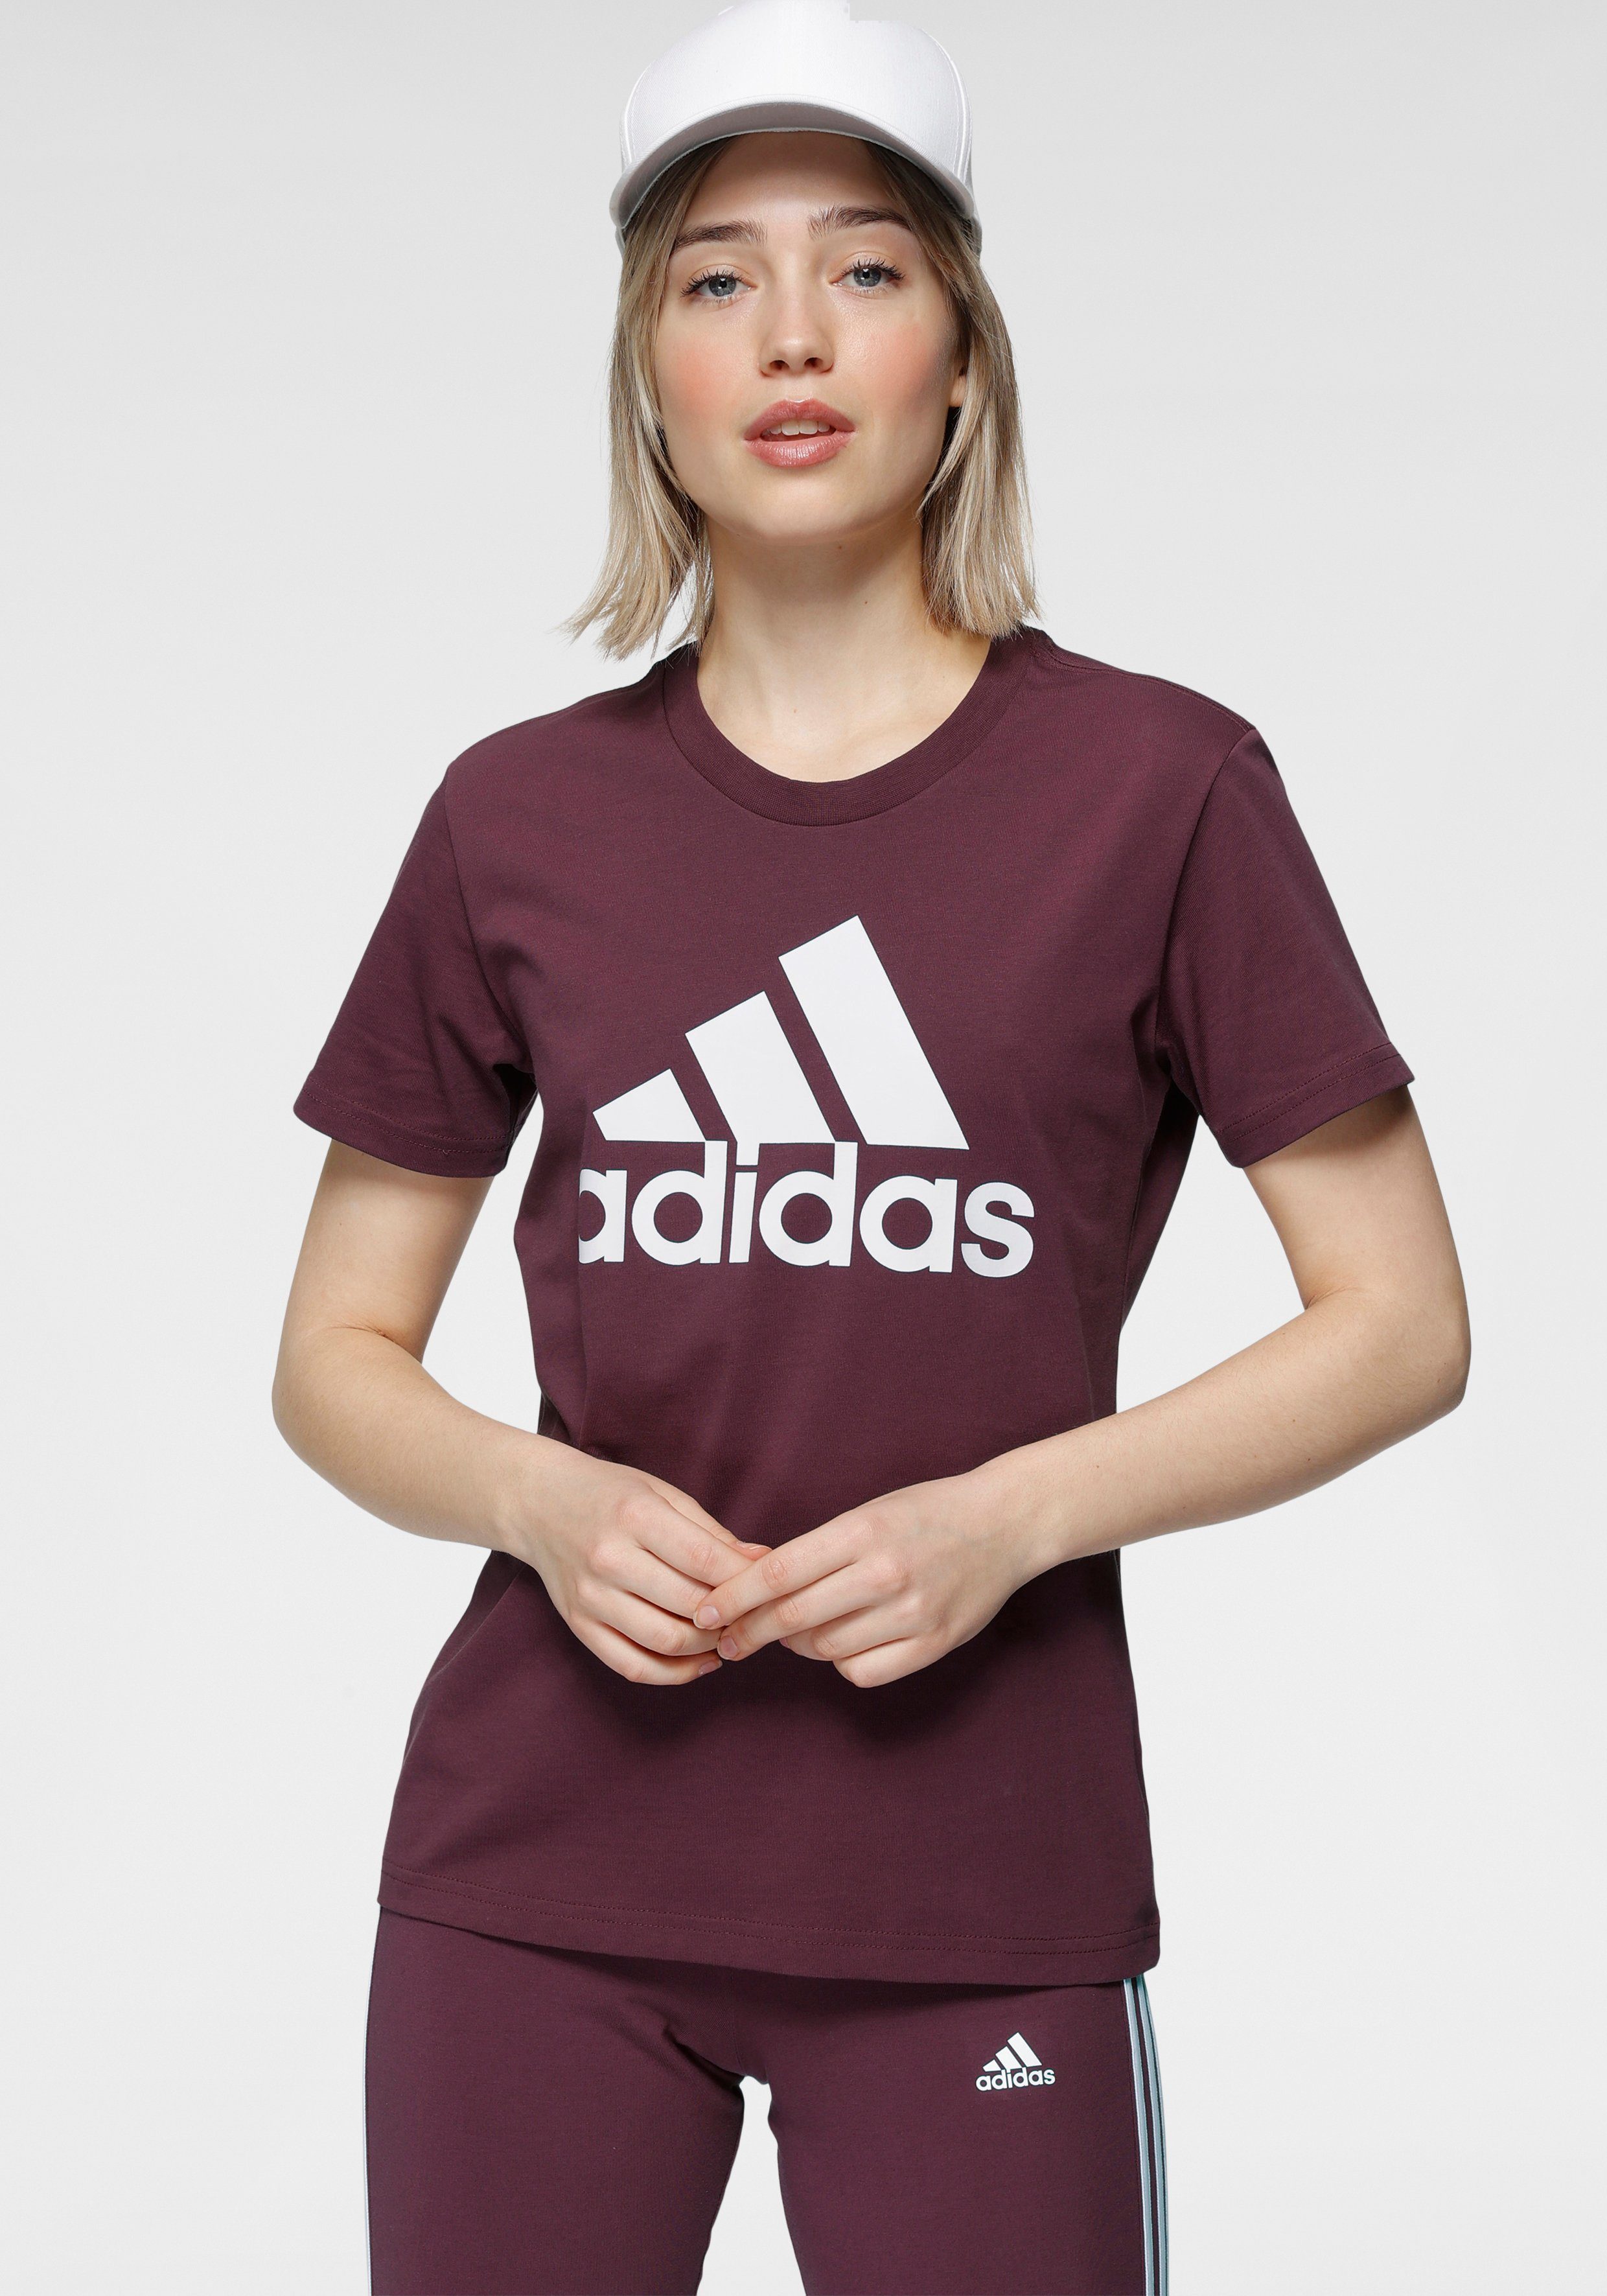 adidas Damen Funktionsshirts online kaufen | OTTO